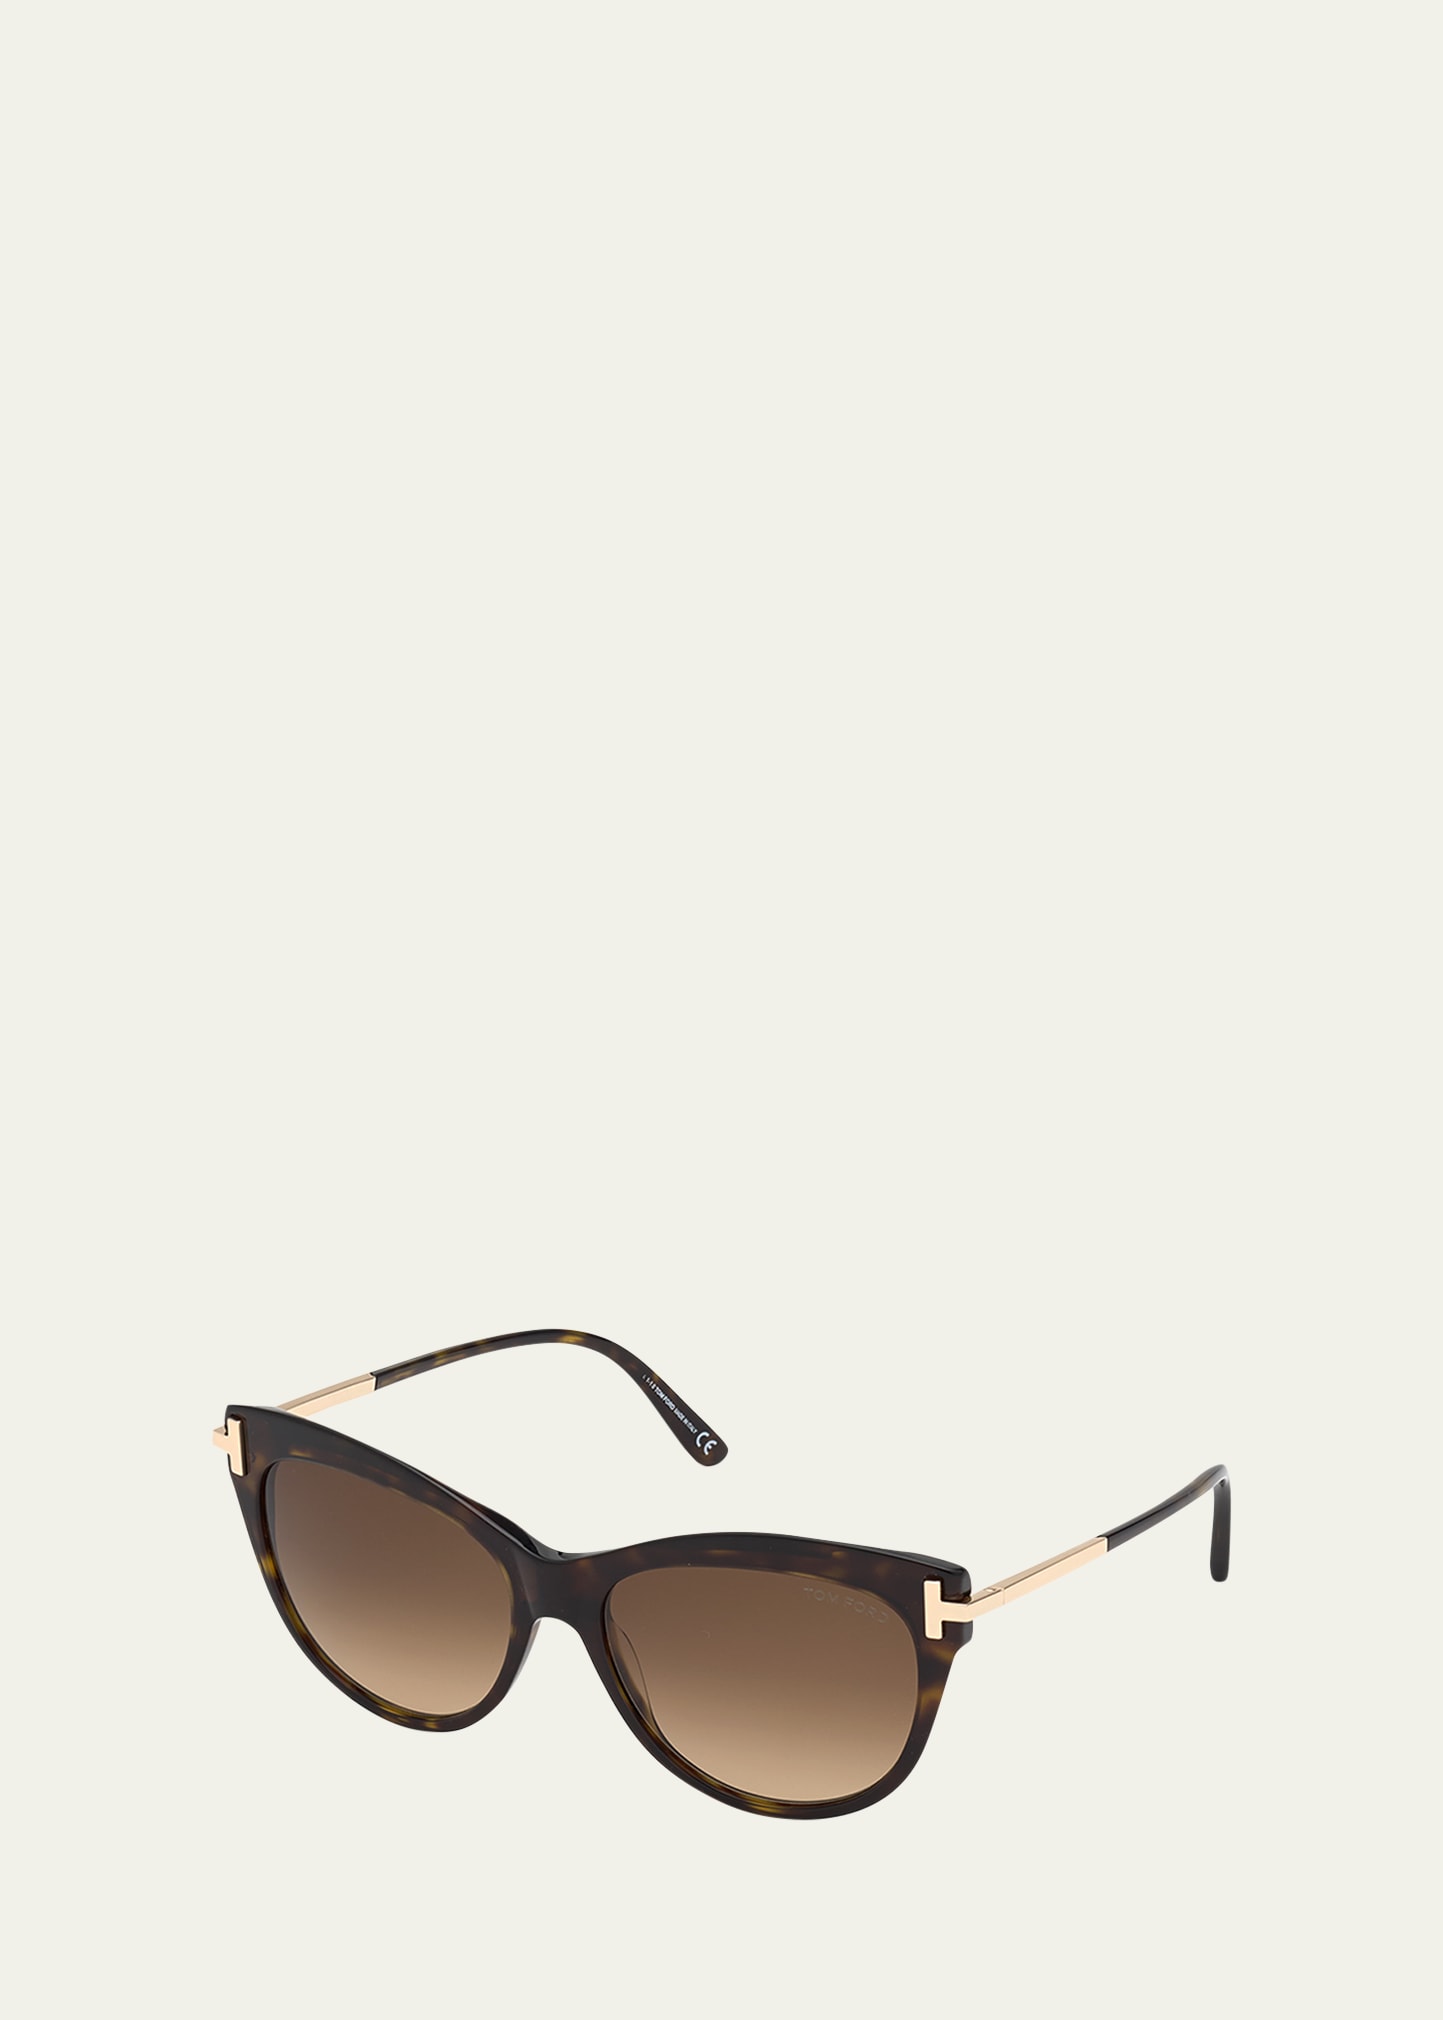 TOM FORD Kira Acetate/Metal Cat-Eye Sunglasses, Black | Bergdorf Goodman